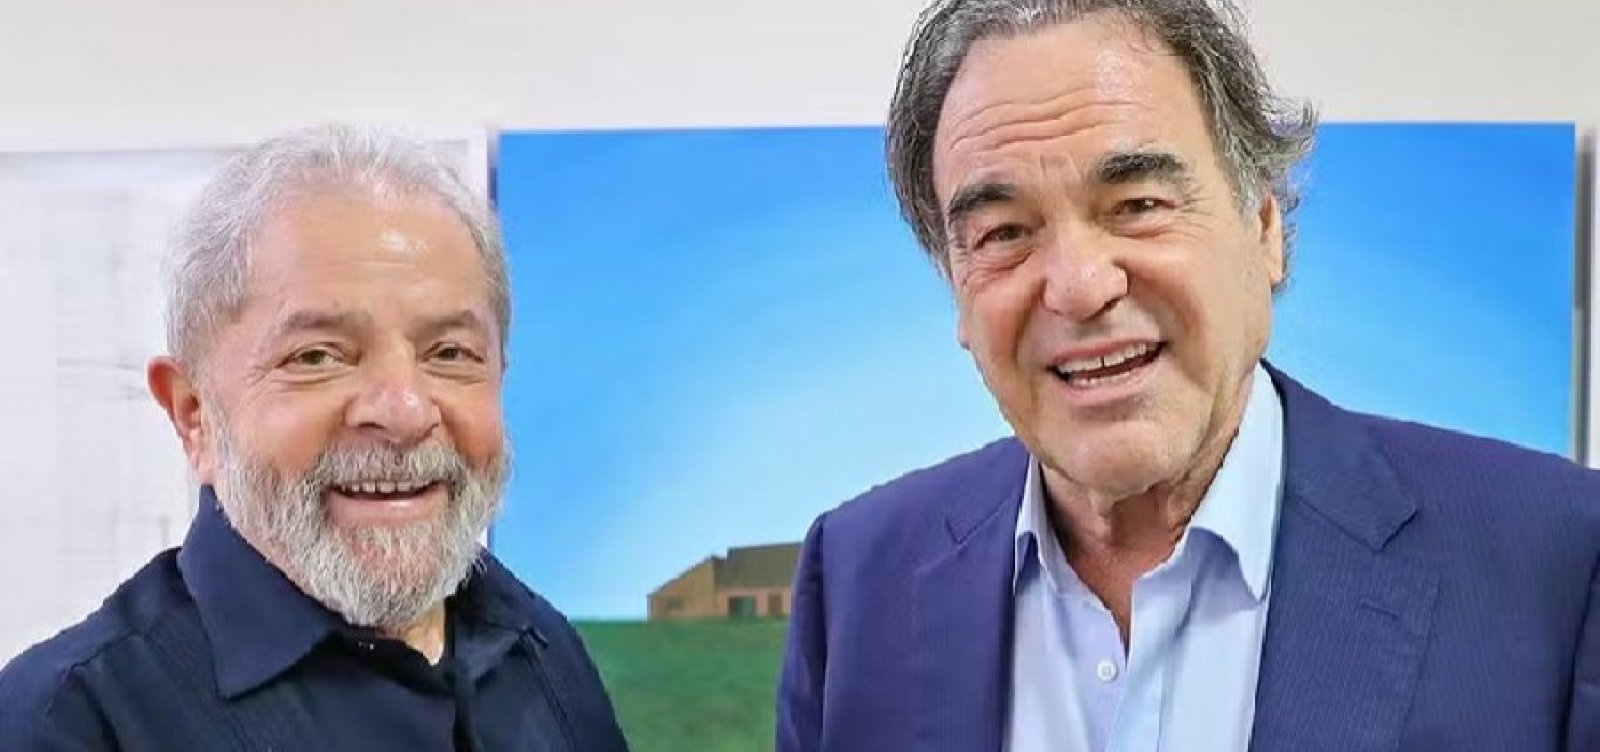 Oliver Stone apresenta documentário sobre Lula no Festival de Cannes